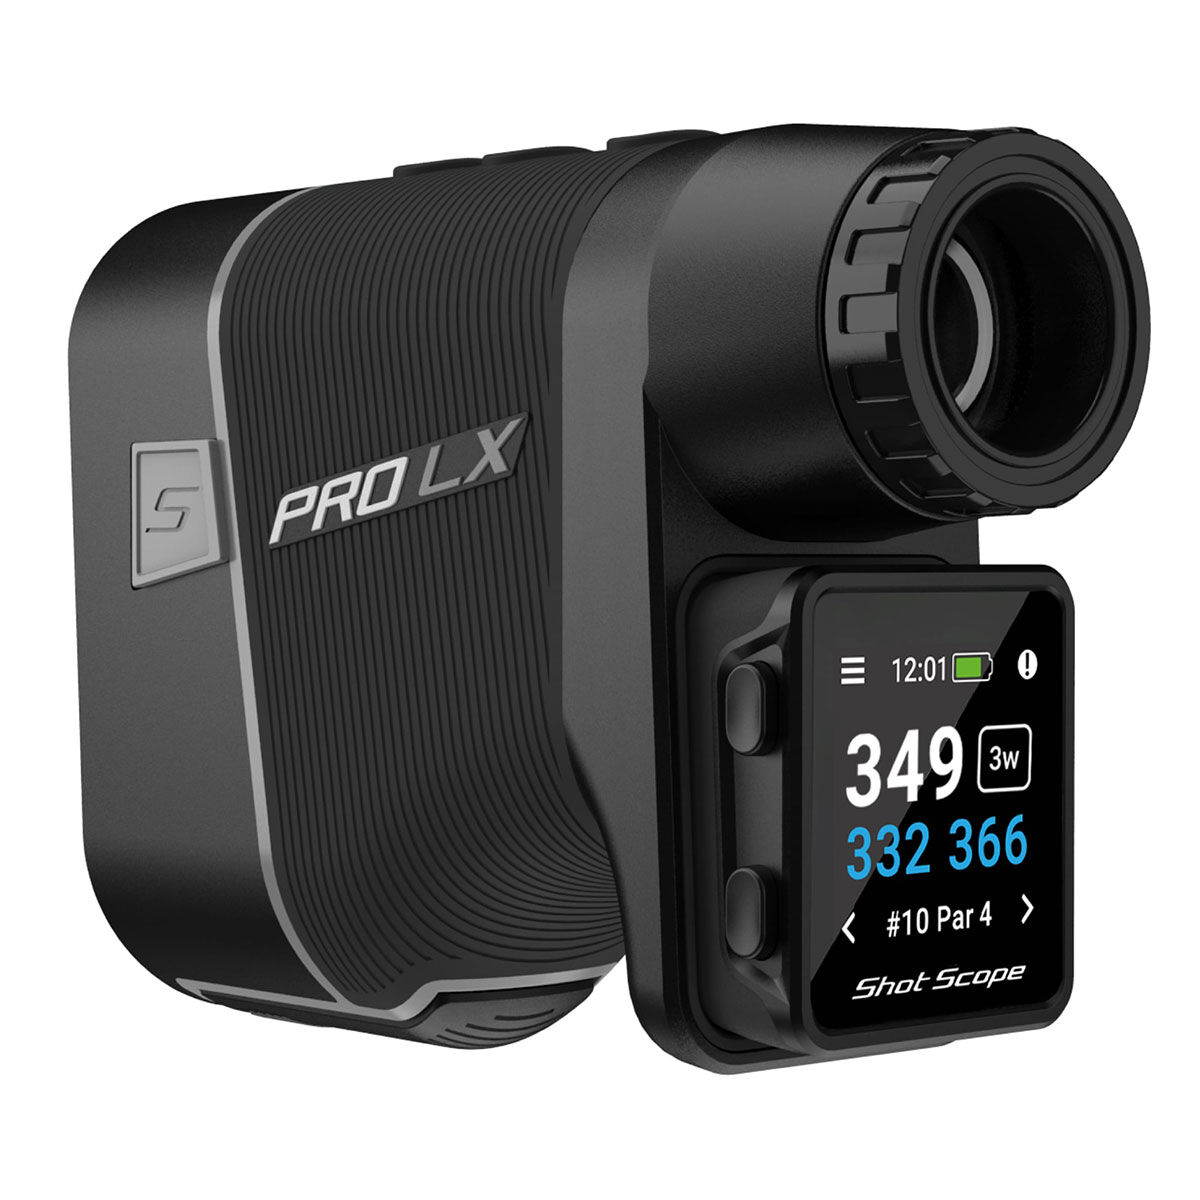 Shot Scope PRO LX+ Entfernungsmesser und Golf GPS